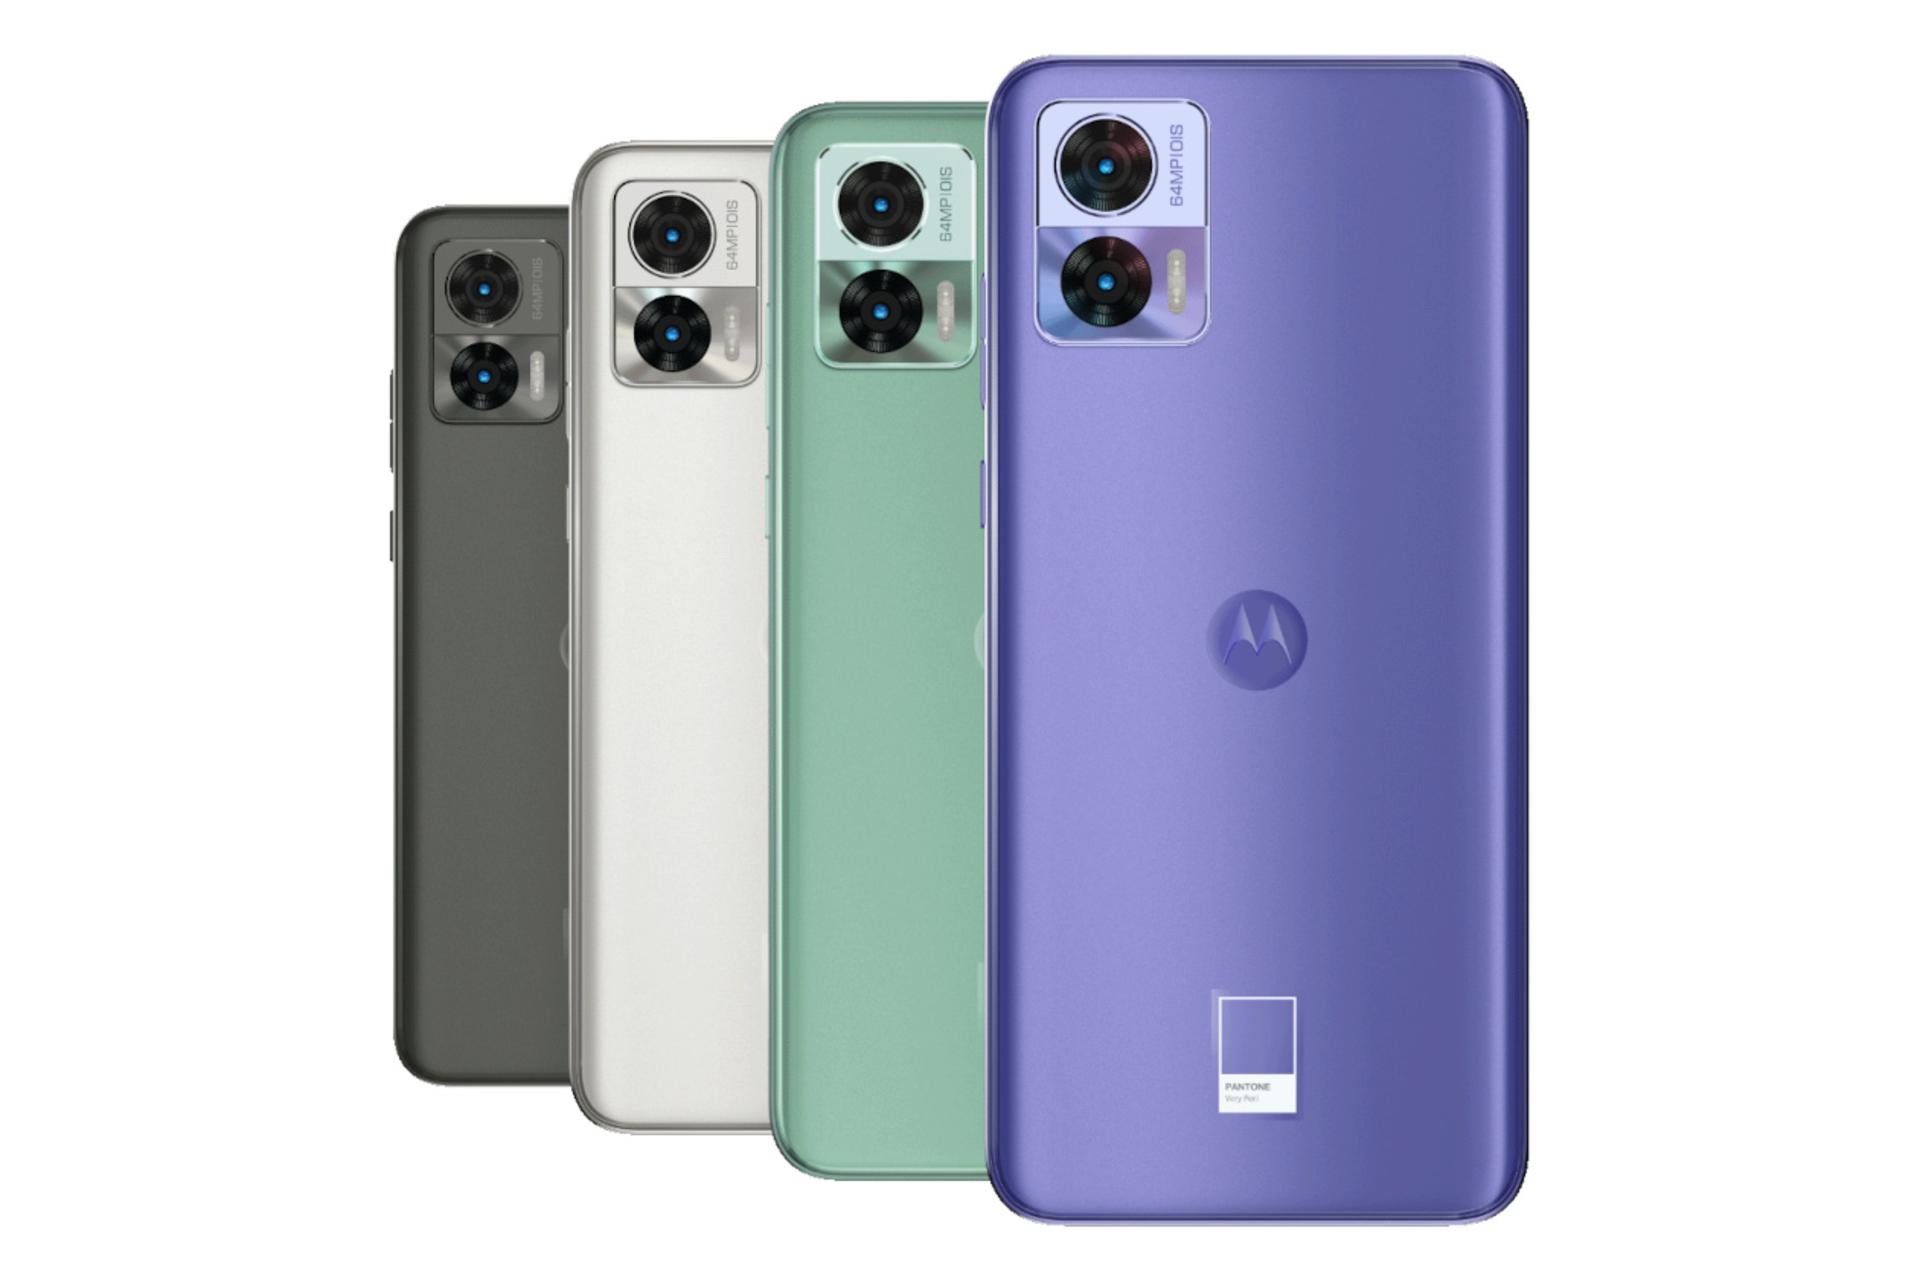 رنگ های مختلف گوشی موبایل موتورولا اج 30 نئو / Motorola Edge 30 Neo